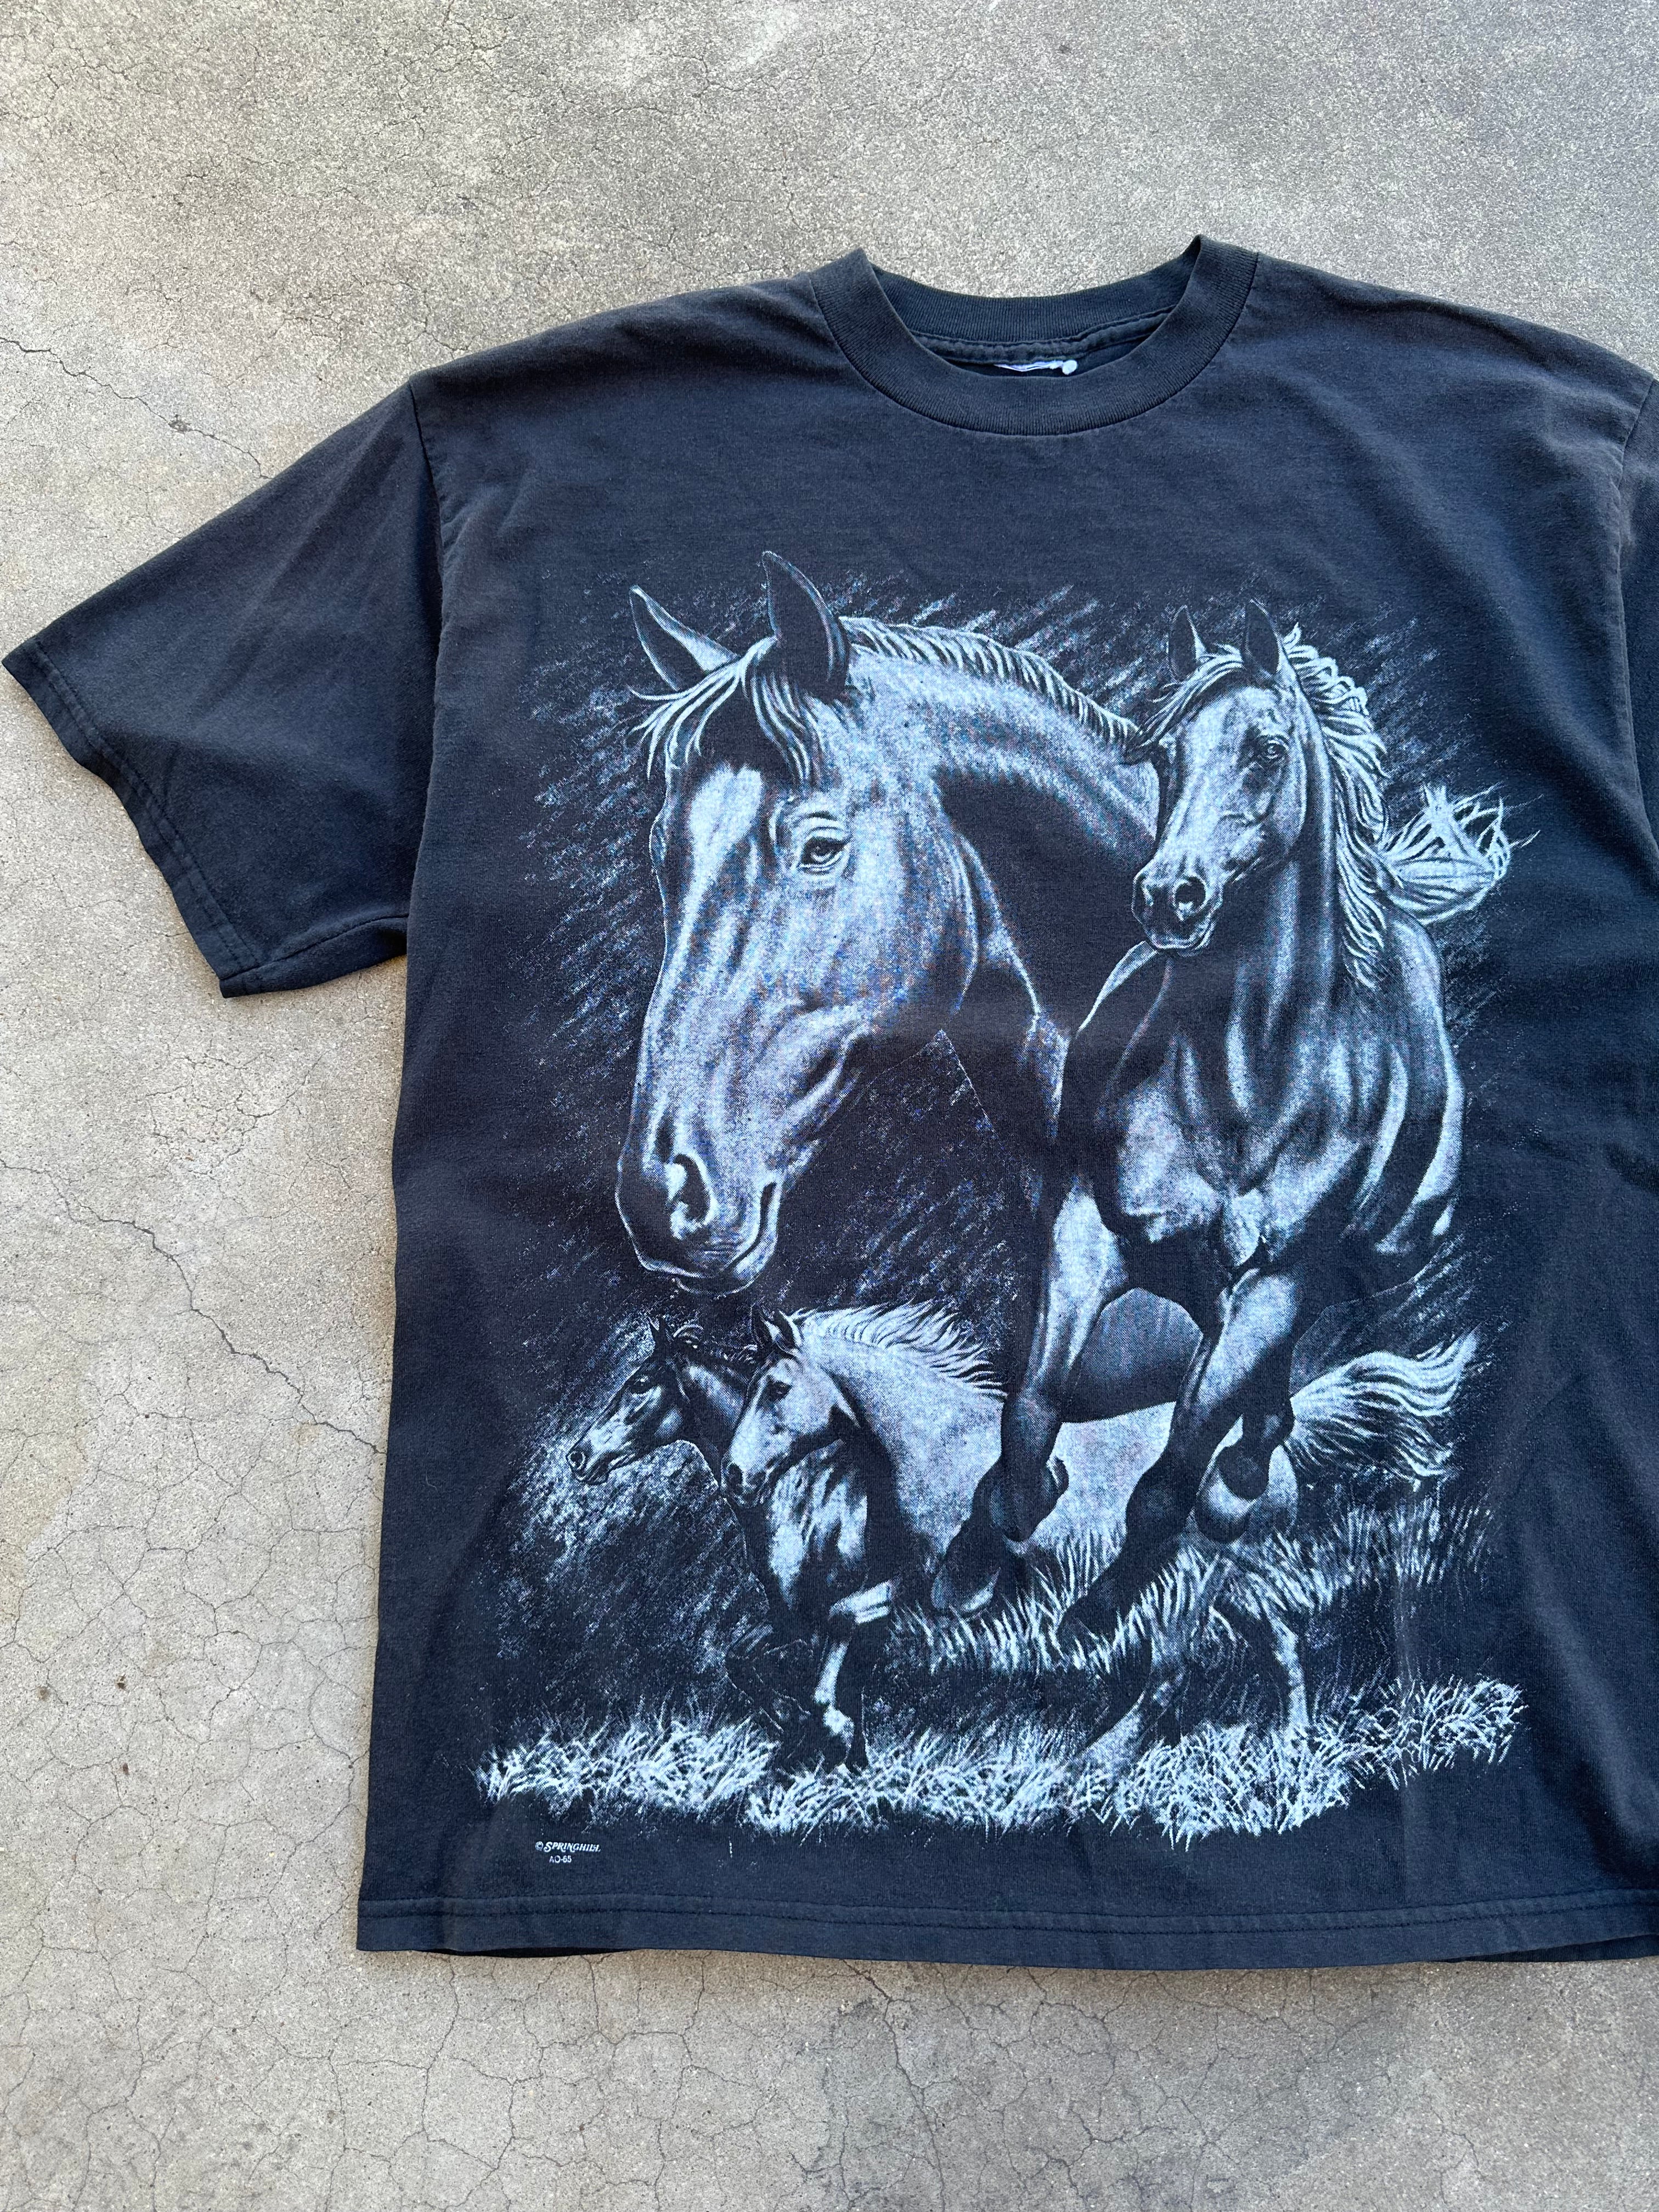 1990s Horses All Over Print T-Shirt (L)